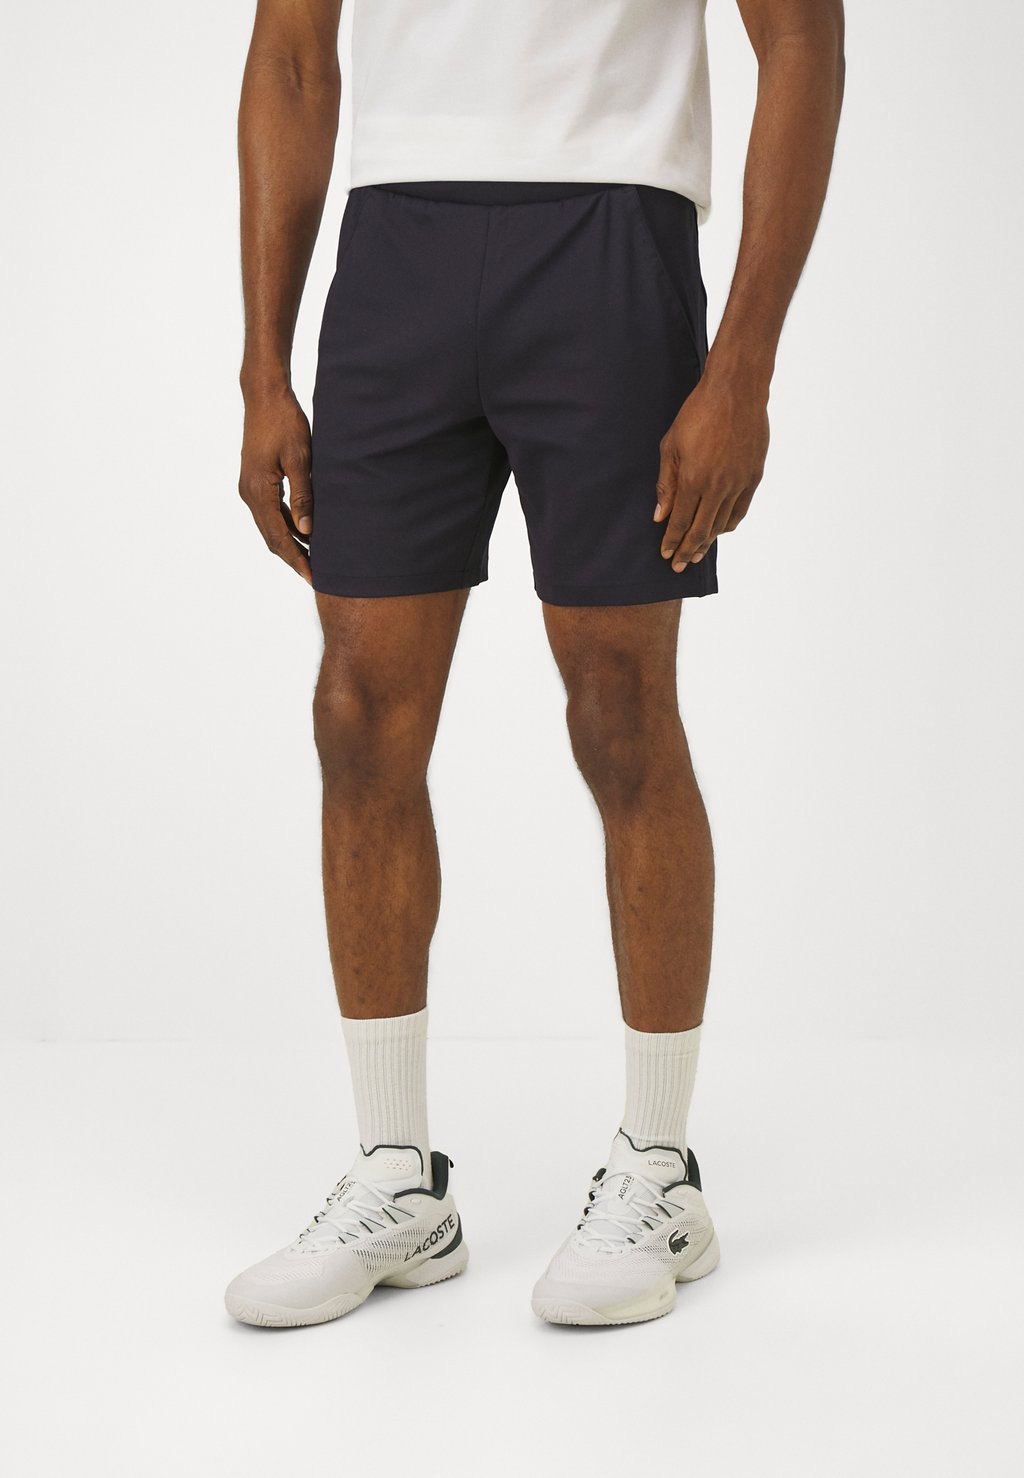 Спортивные шорты Tennis Shorts Heritage Lacoste, цвет bleu marine спортивные шорты tennis shorts heritage lacoste белый